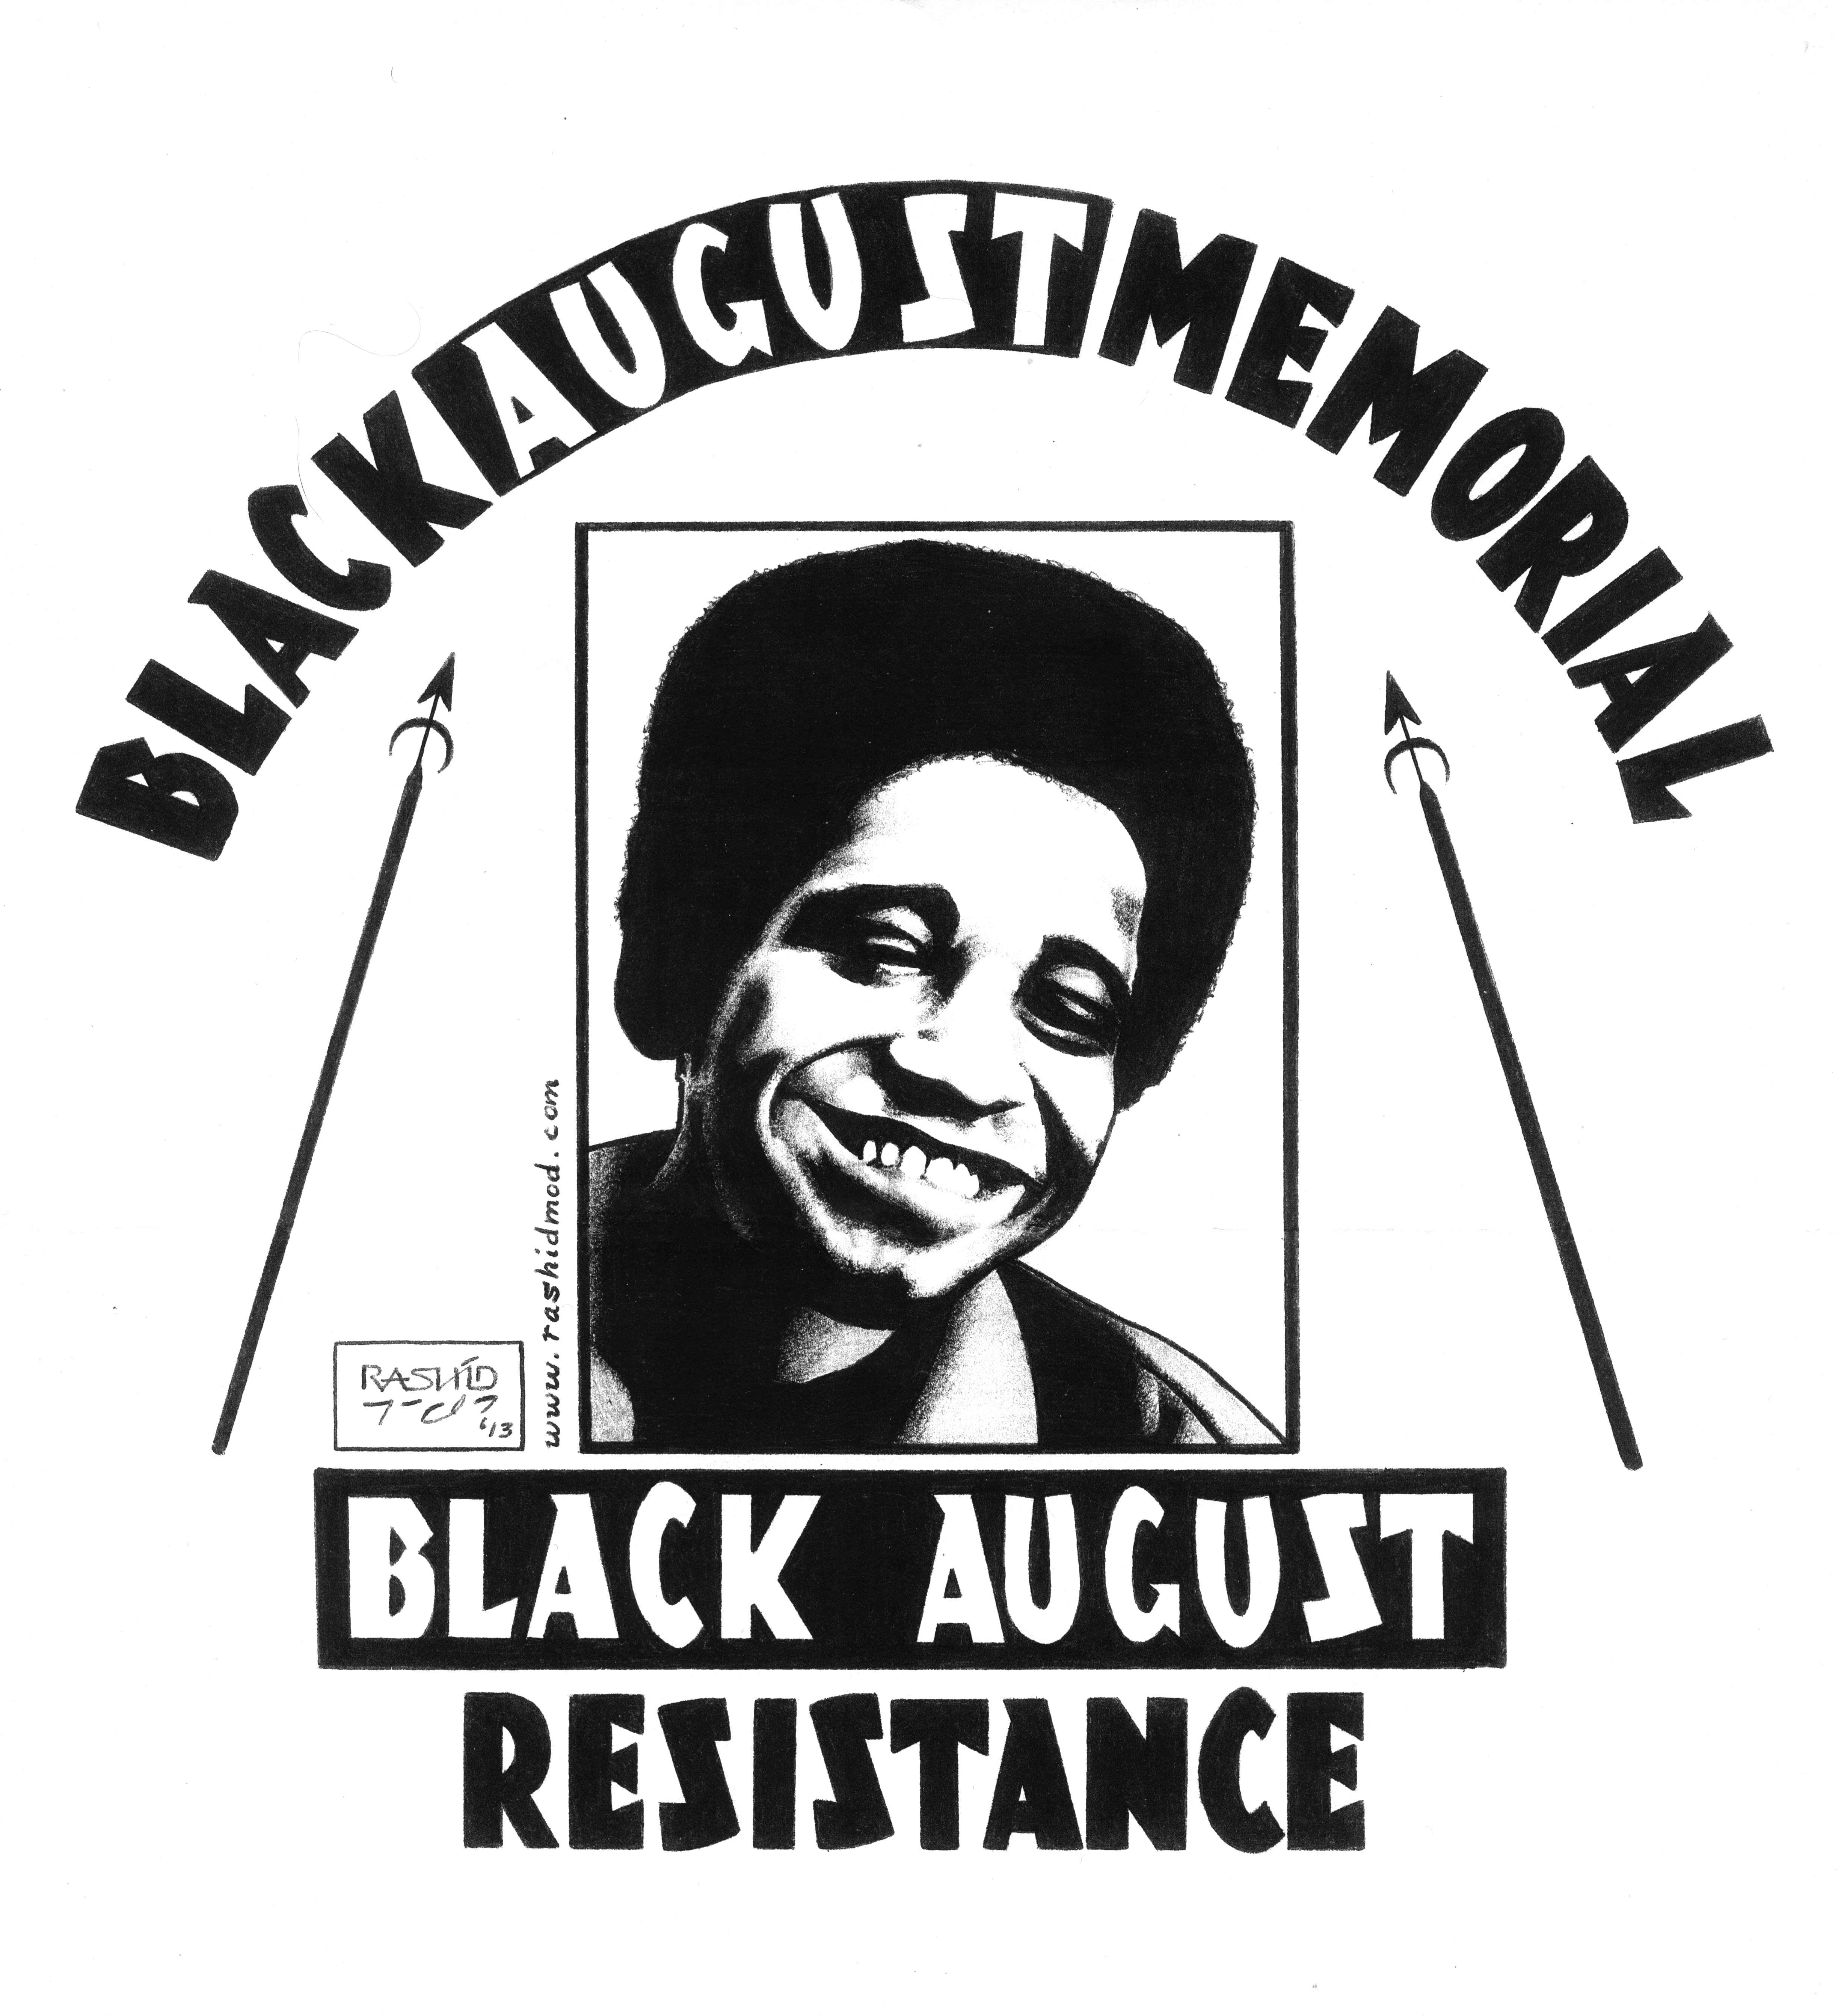 Black August Memorial - Black August Resistance